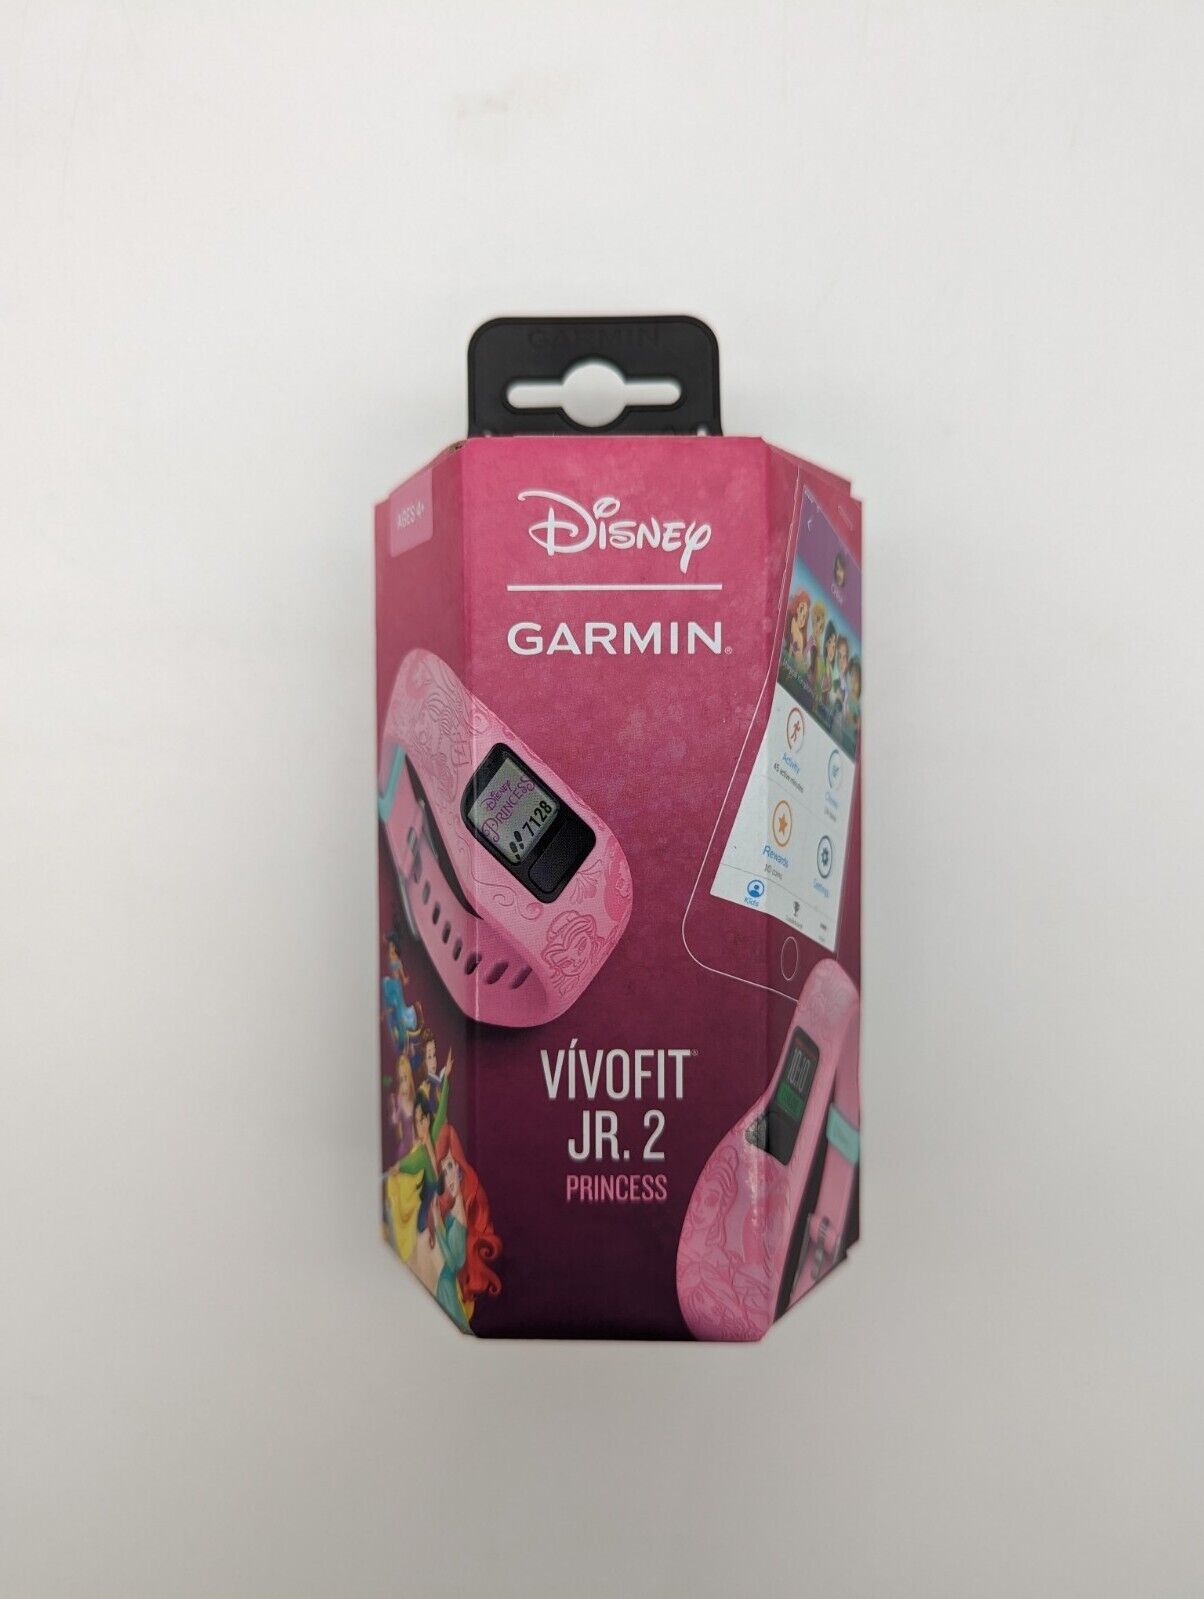 Disney Garmin VivoFit JR (Junior) 2 Princess Fitness Tracker - Pink Garmin 010-01909-33